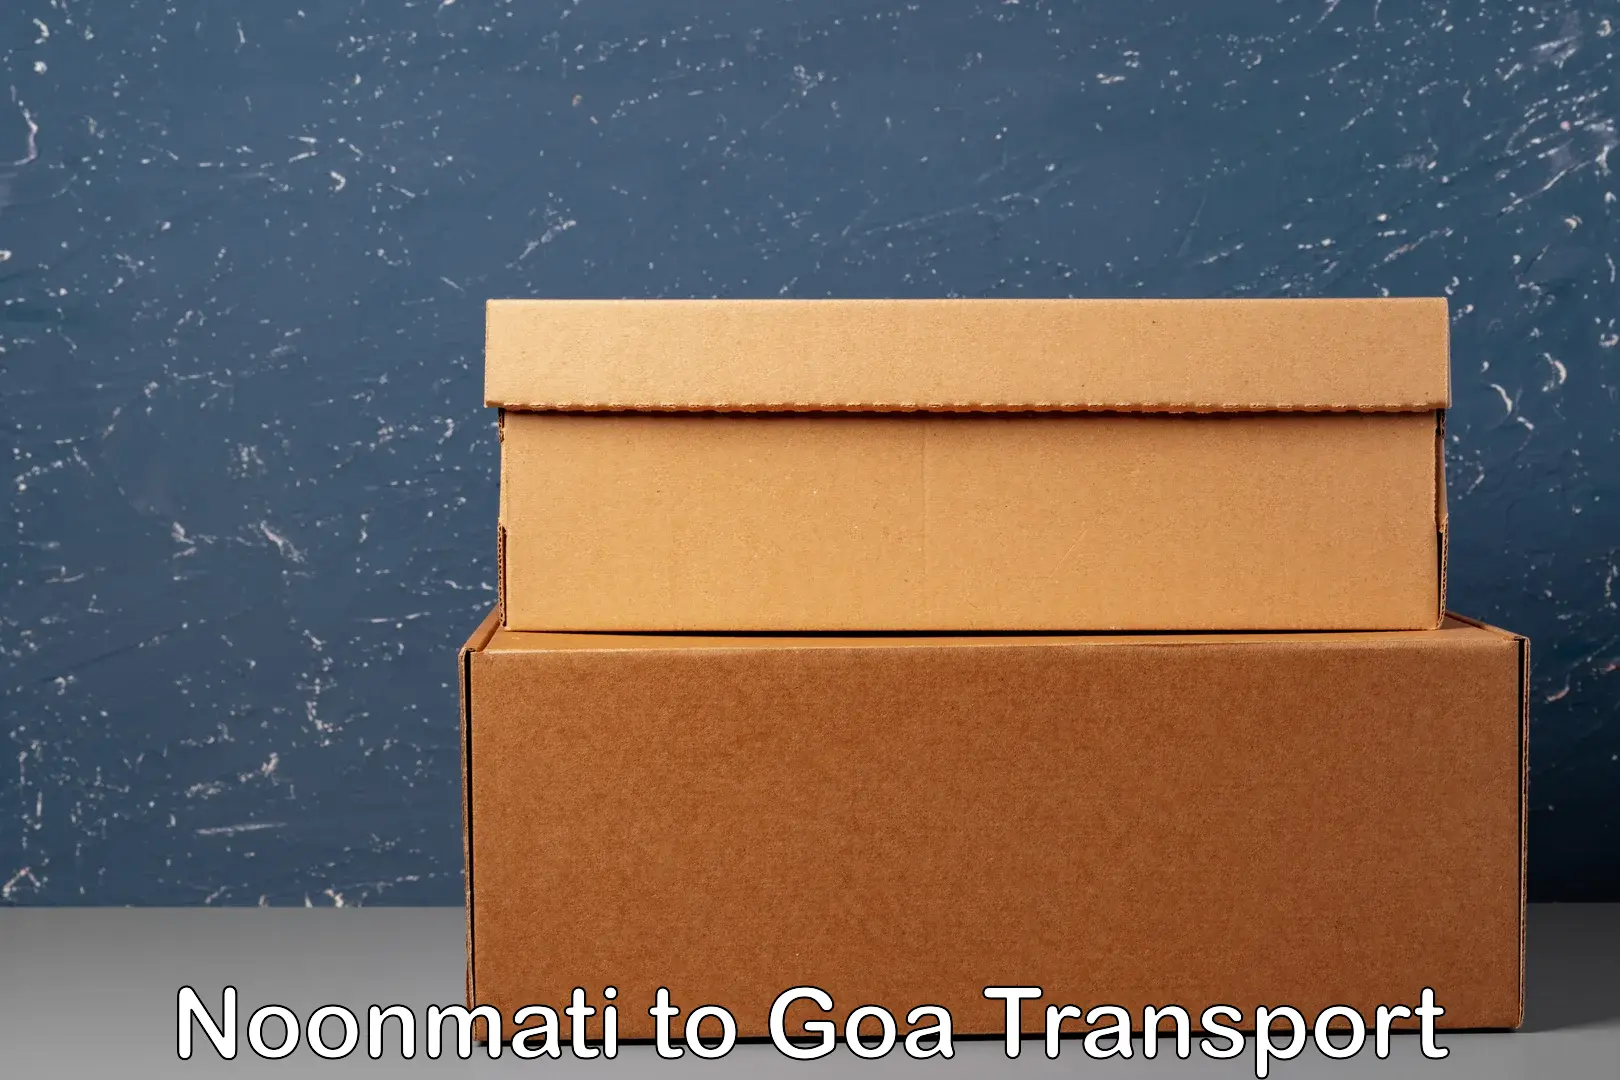 Cargo transportation services Noonmati to Mormugao Port